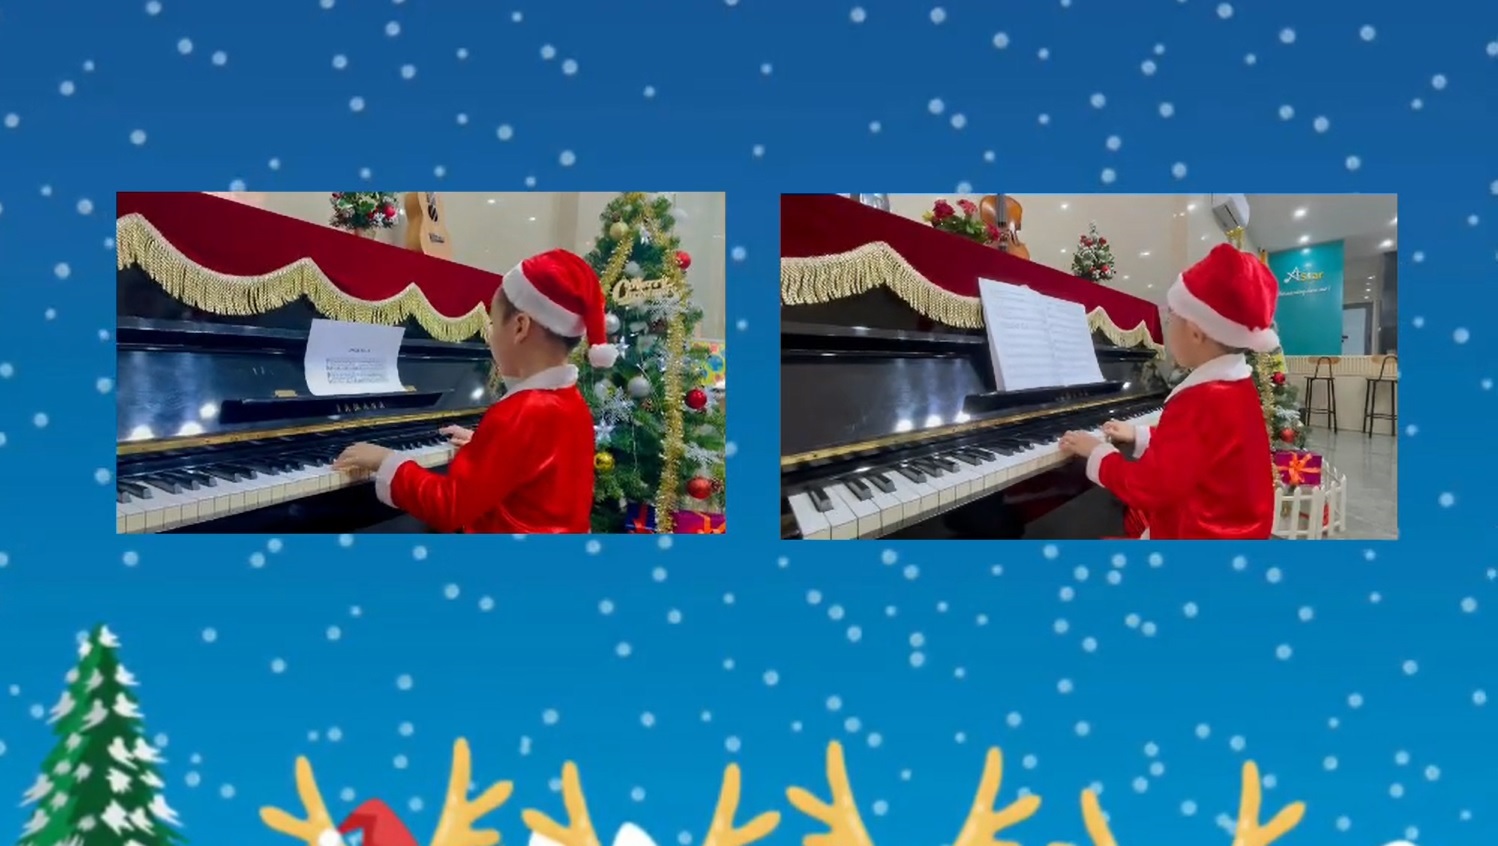 Jingle bells (Hv: An Hưng & Hoàng Anh)